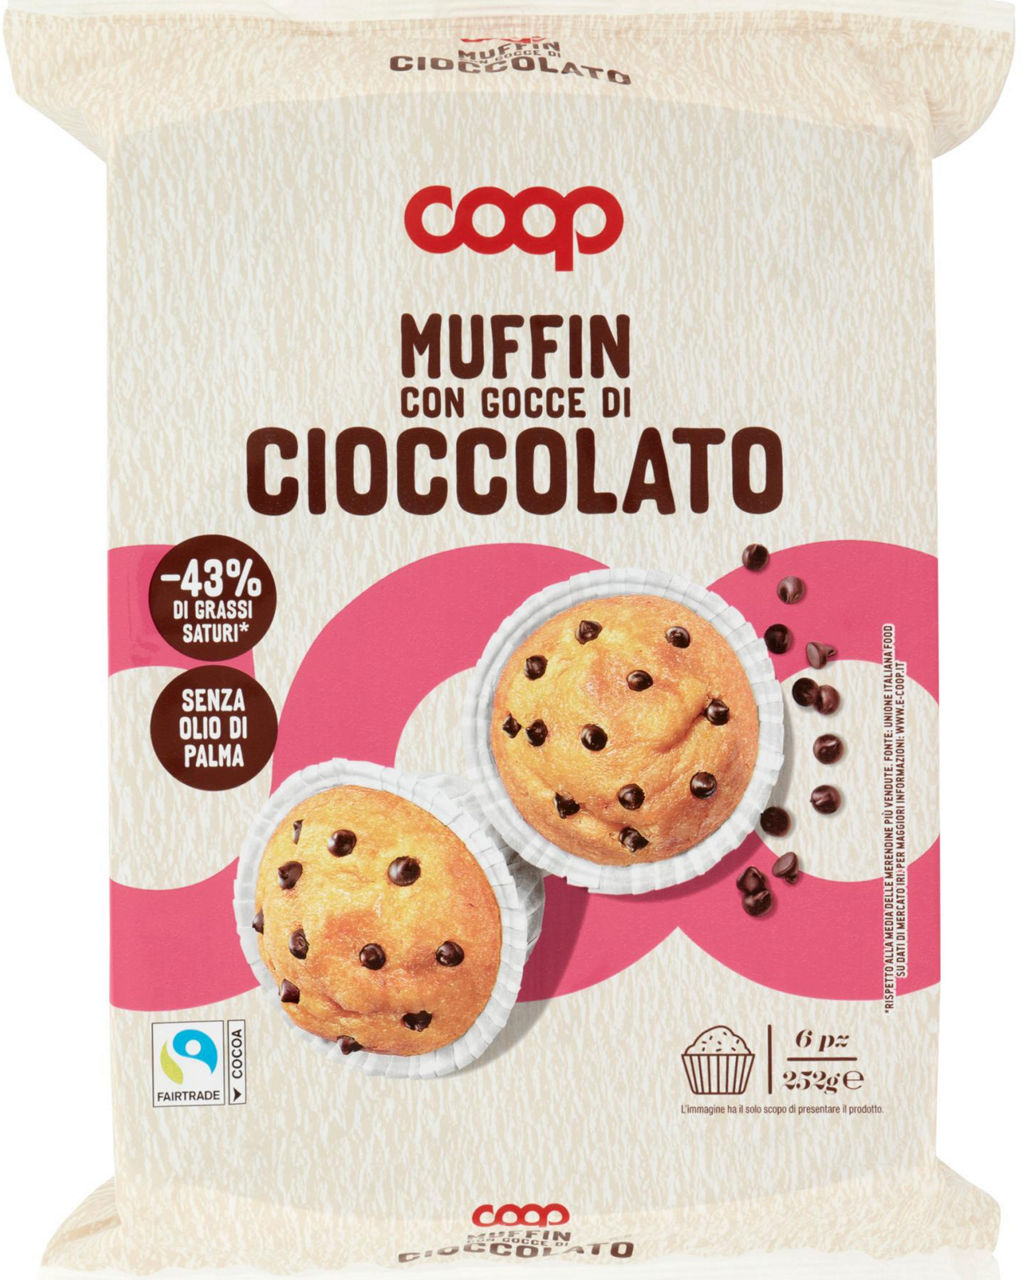 Muffin classico con gocce di cioccolato coop flow-pack g 252